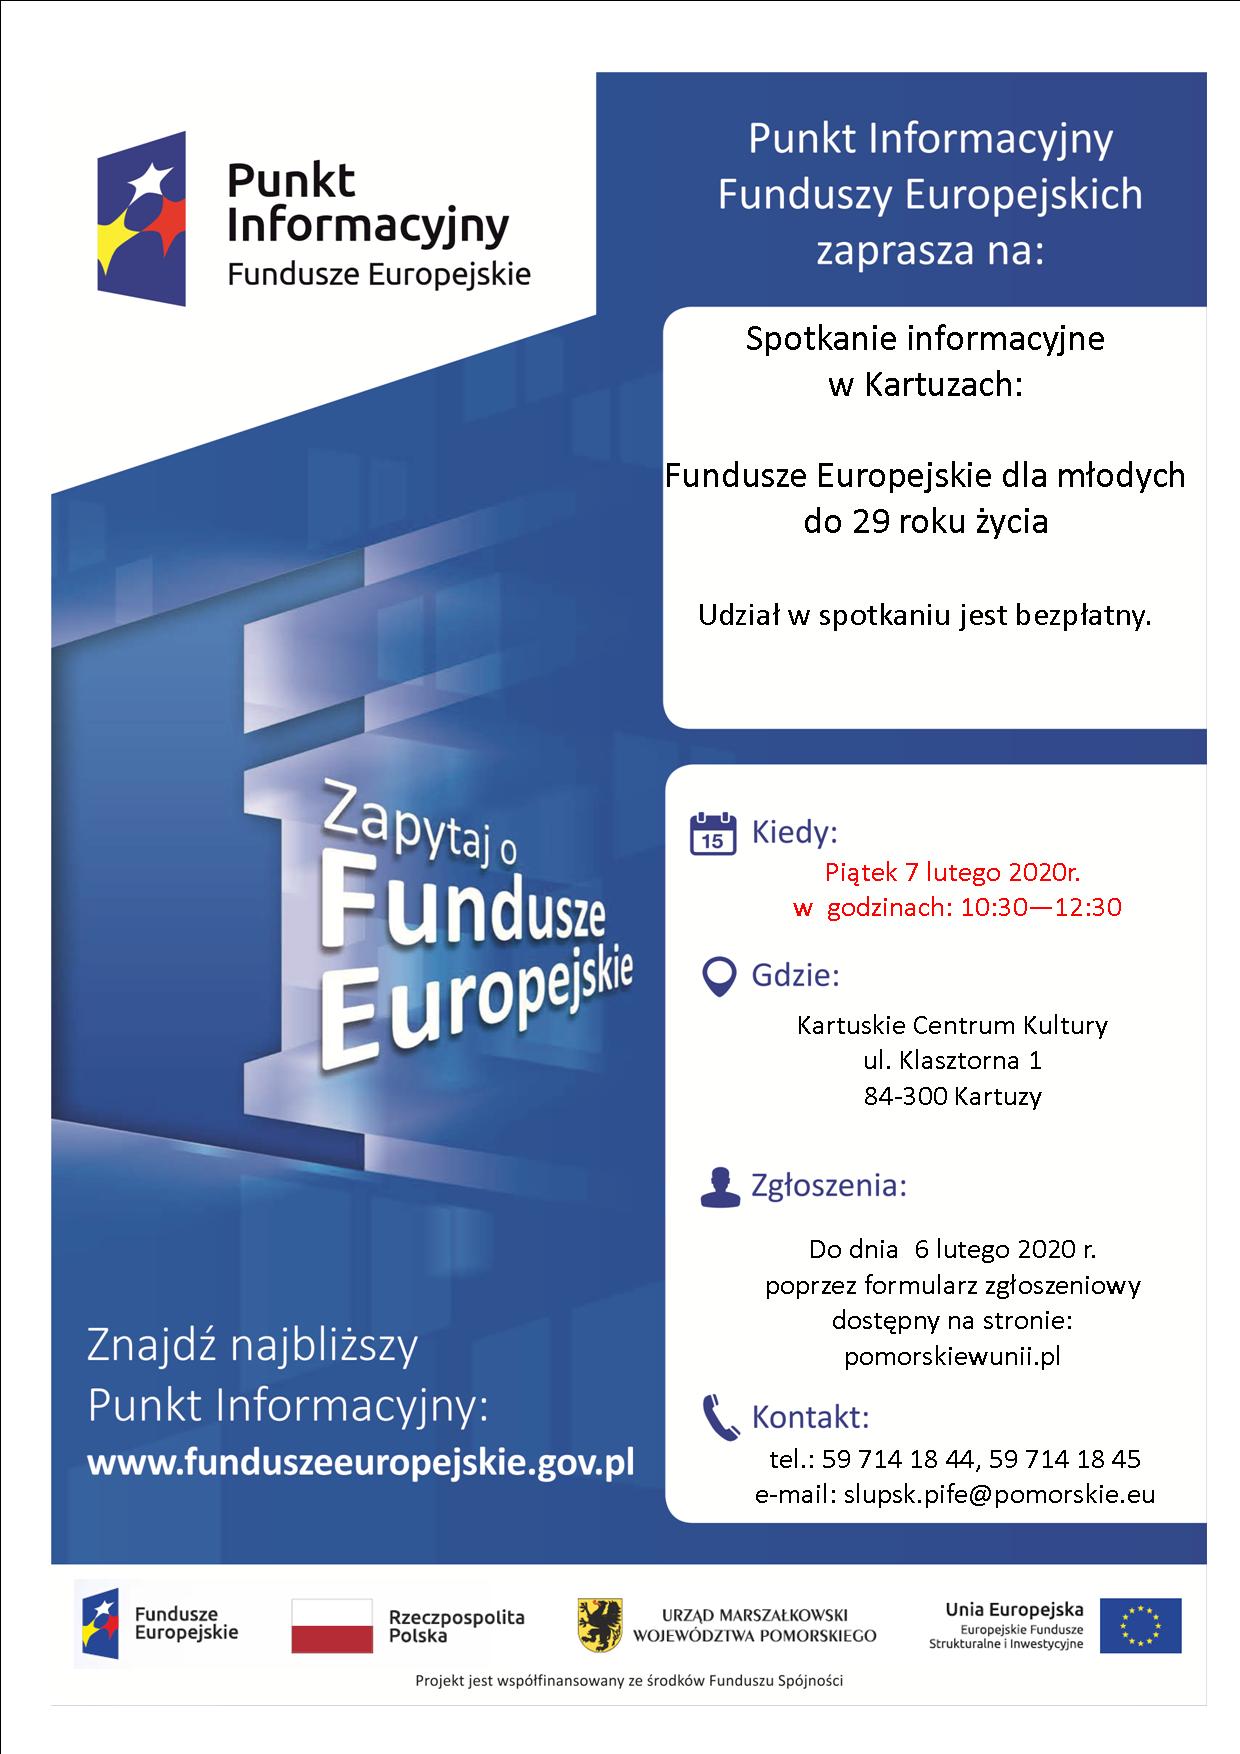 Spotkanie informacyjne w Kartuzach - Fundusze Europejskie dla młodych do 29 roku życia